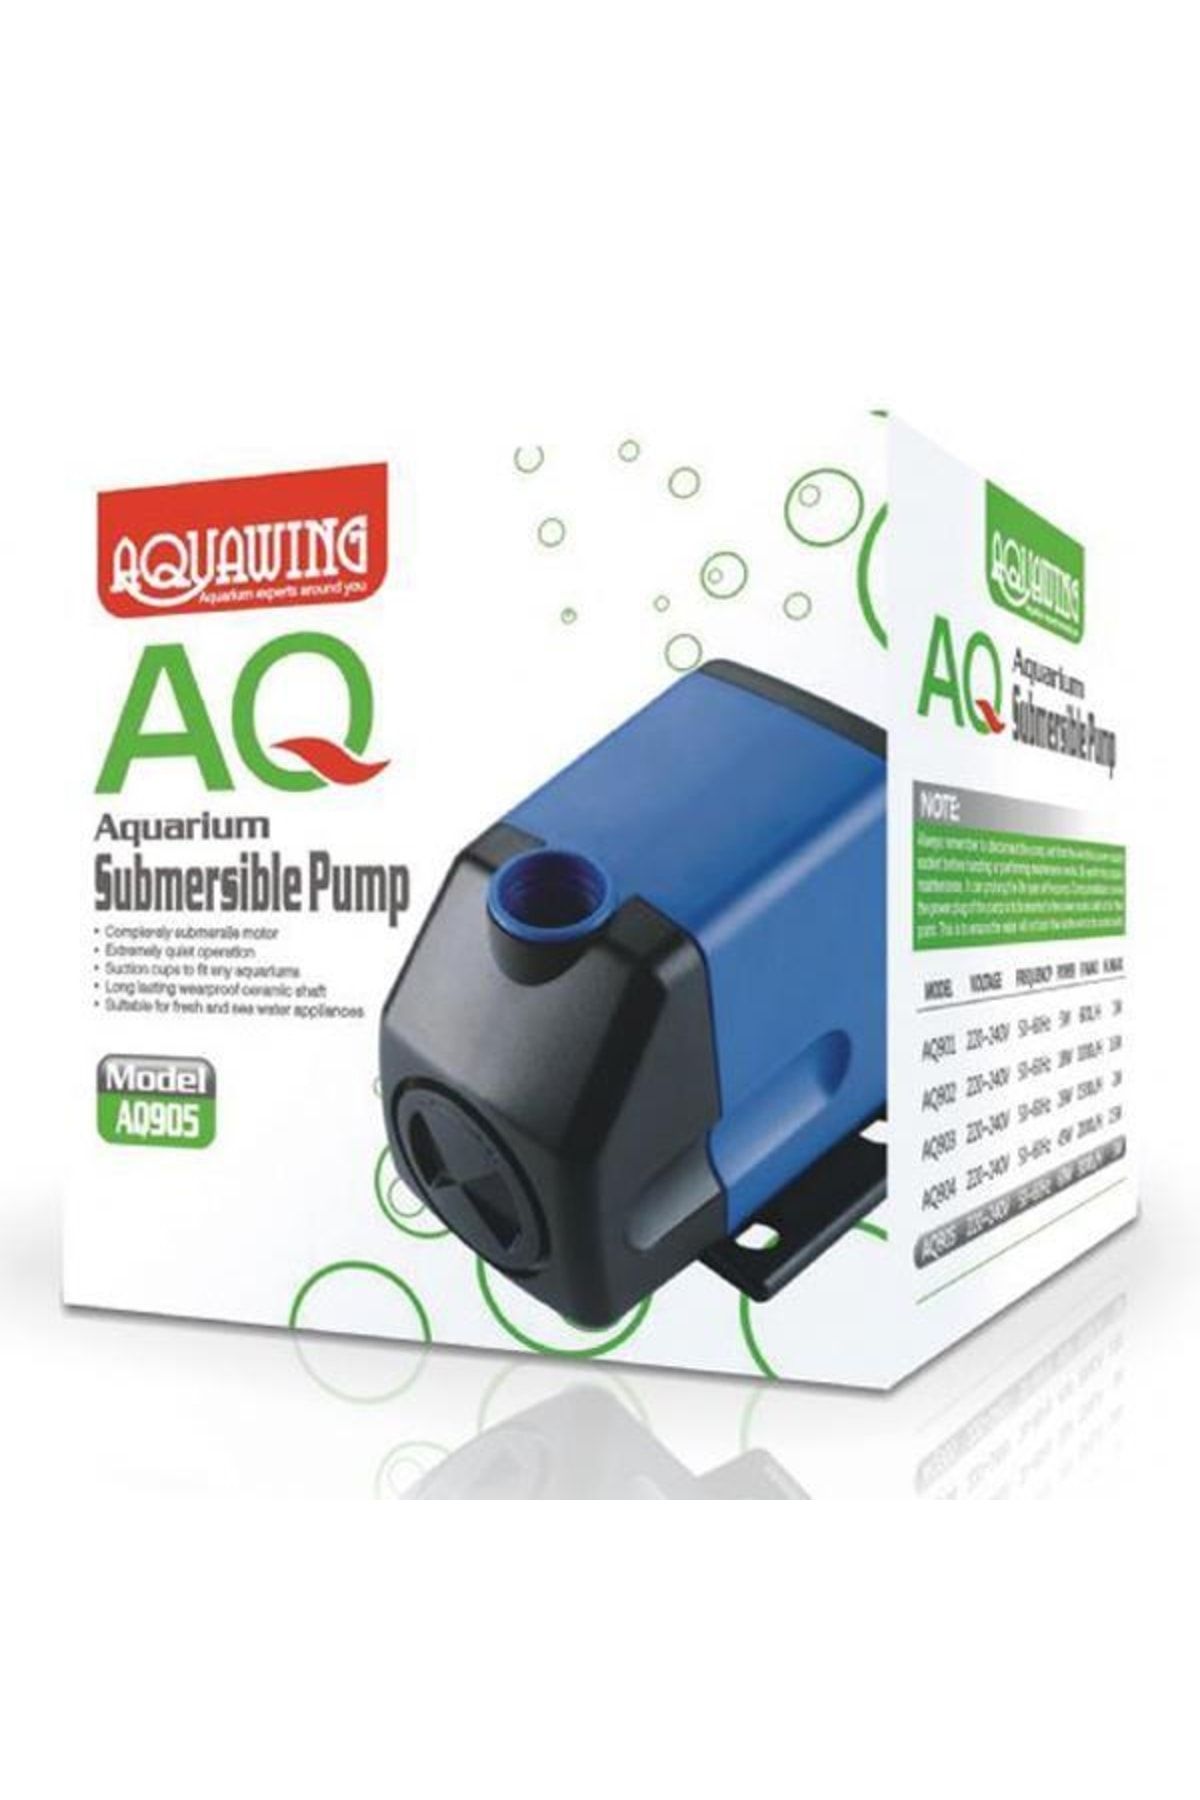 Aquawing Aquawıng Aq905 Sump Akvaryum Kafa Motoru 60w 3000l/h